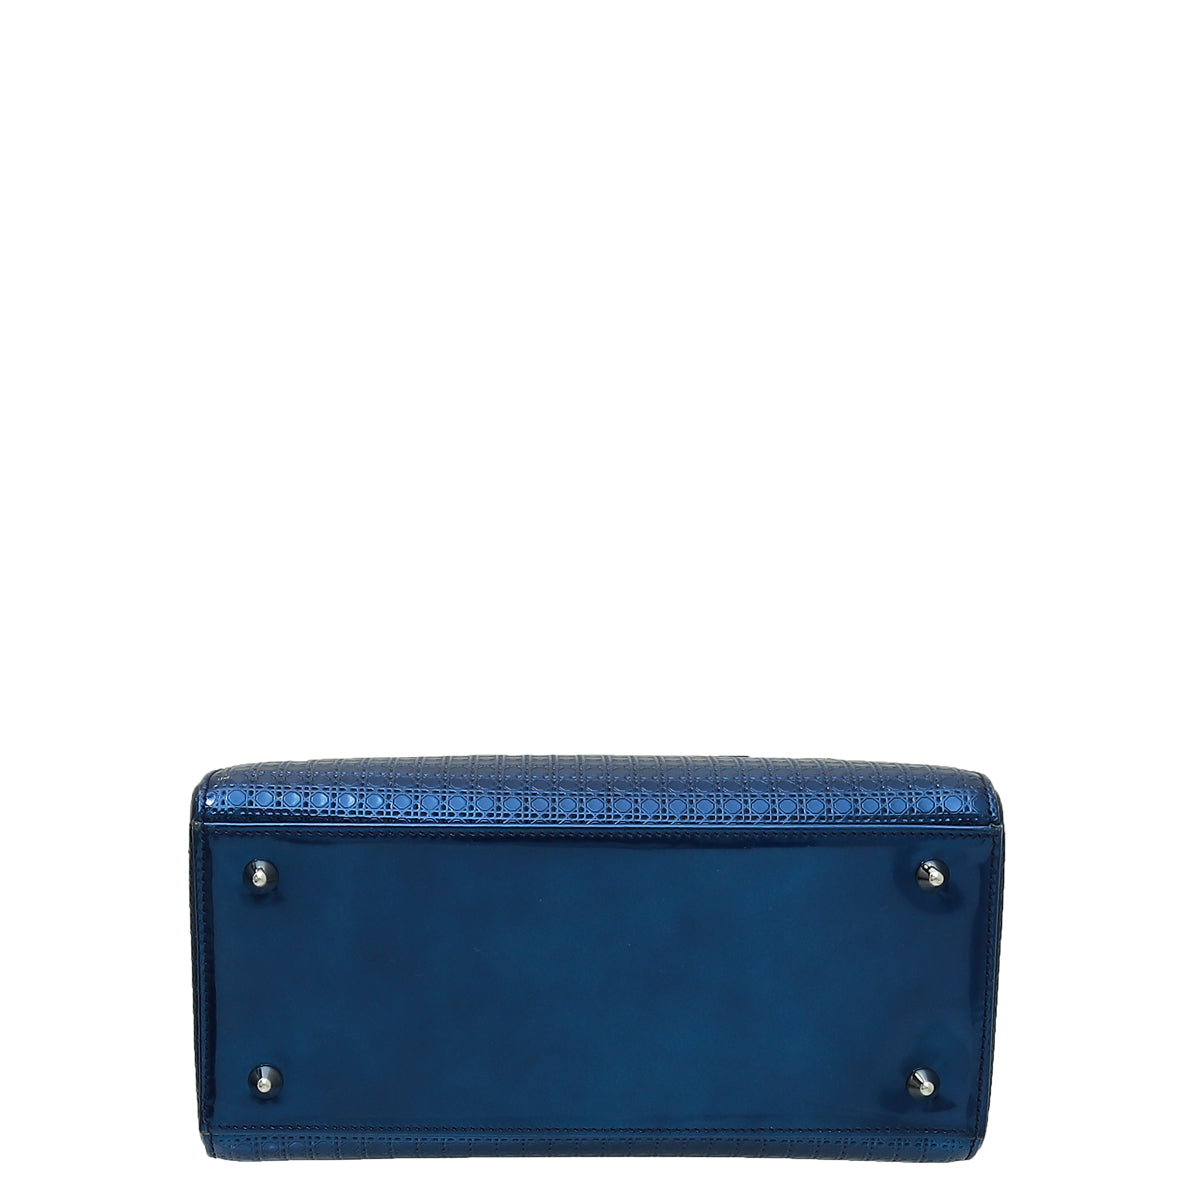 Christian Dior Blue Lady Dior Micro Cannage Medium Bag